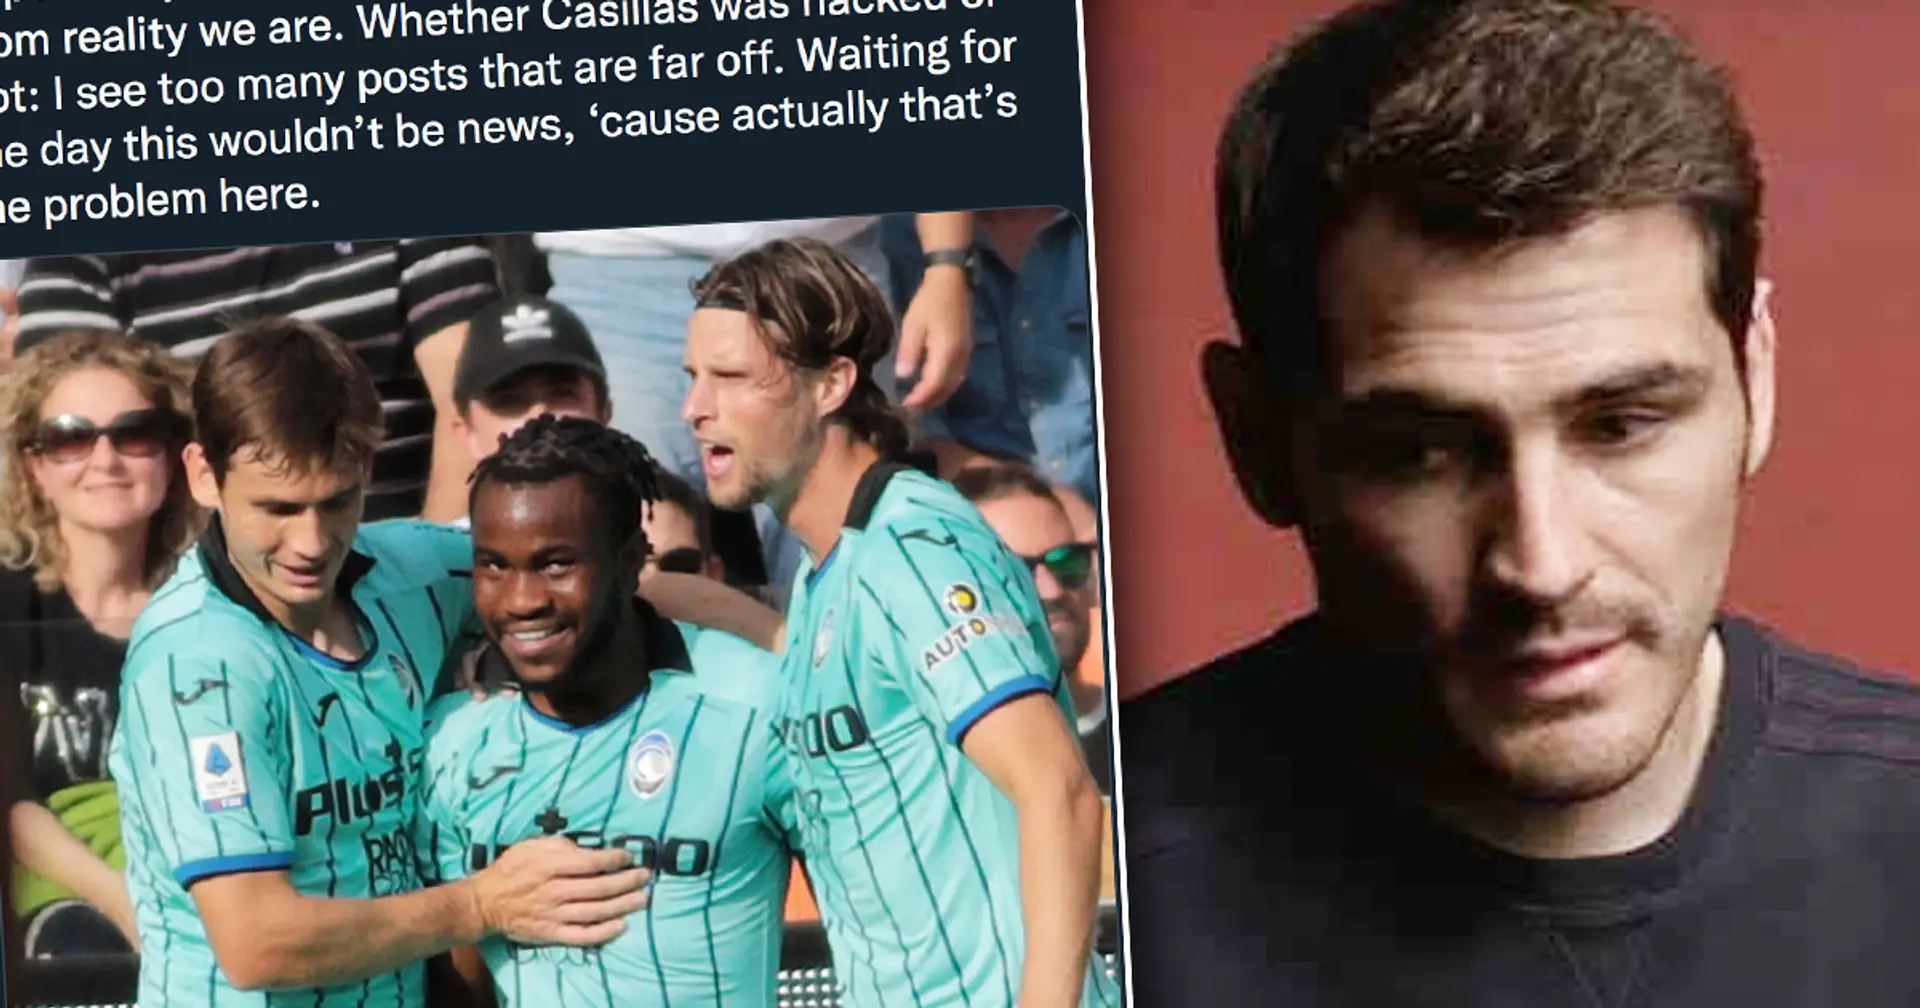 "Ca montre à quel point nous sommes loin de la réalité": la star de l'Atalanta interpelle Casillas pour un tweet "piraté ou non"